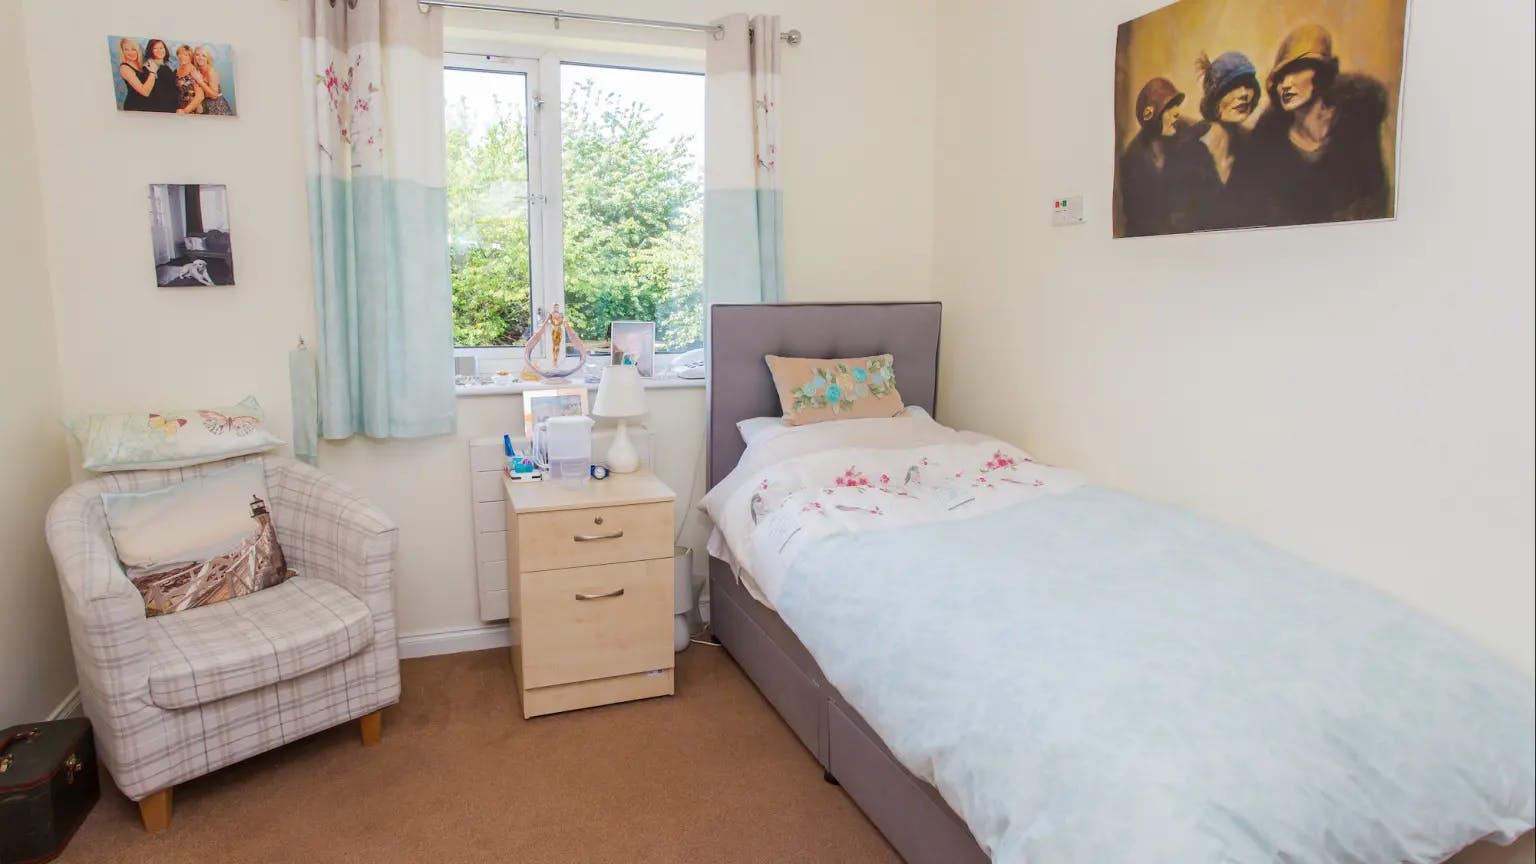 Bedroom area of Moutnbatten Lodge care home in Hemel Hempstead, Hertfordshire